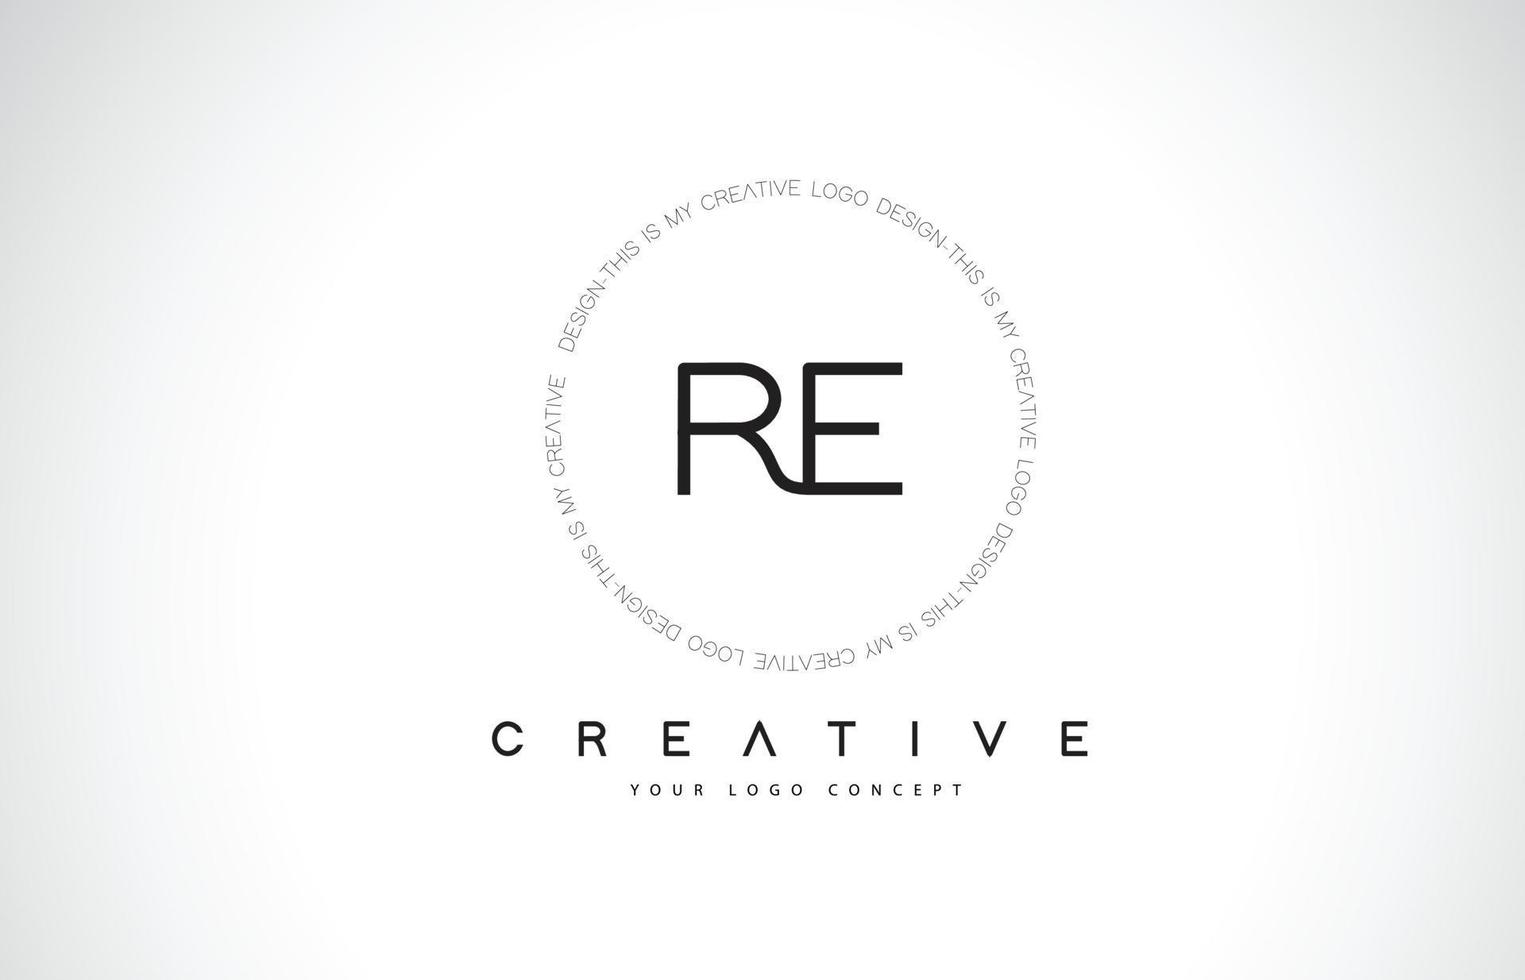 re re création de logo avec vecteur de lettre de texte créatif noir et blanc.